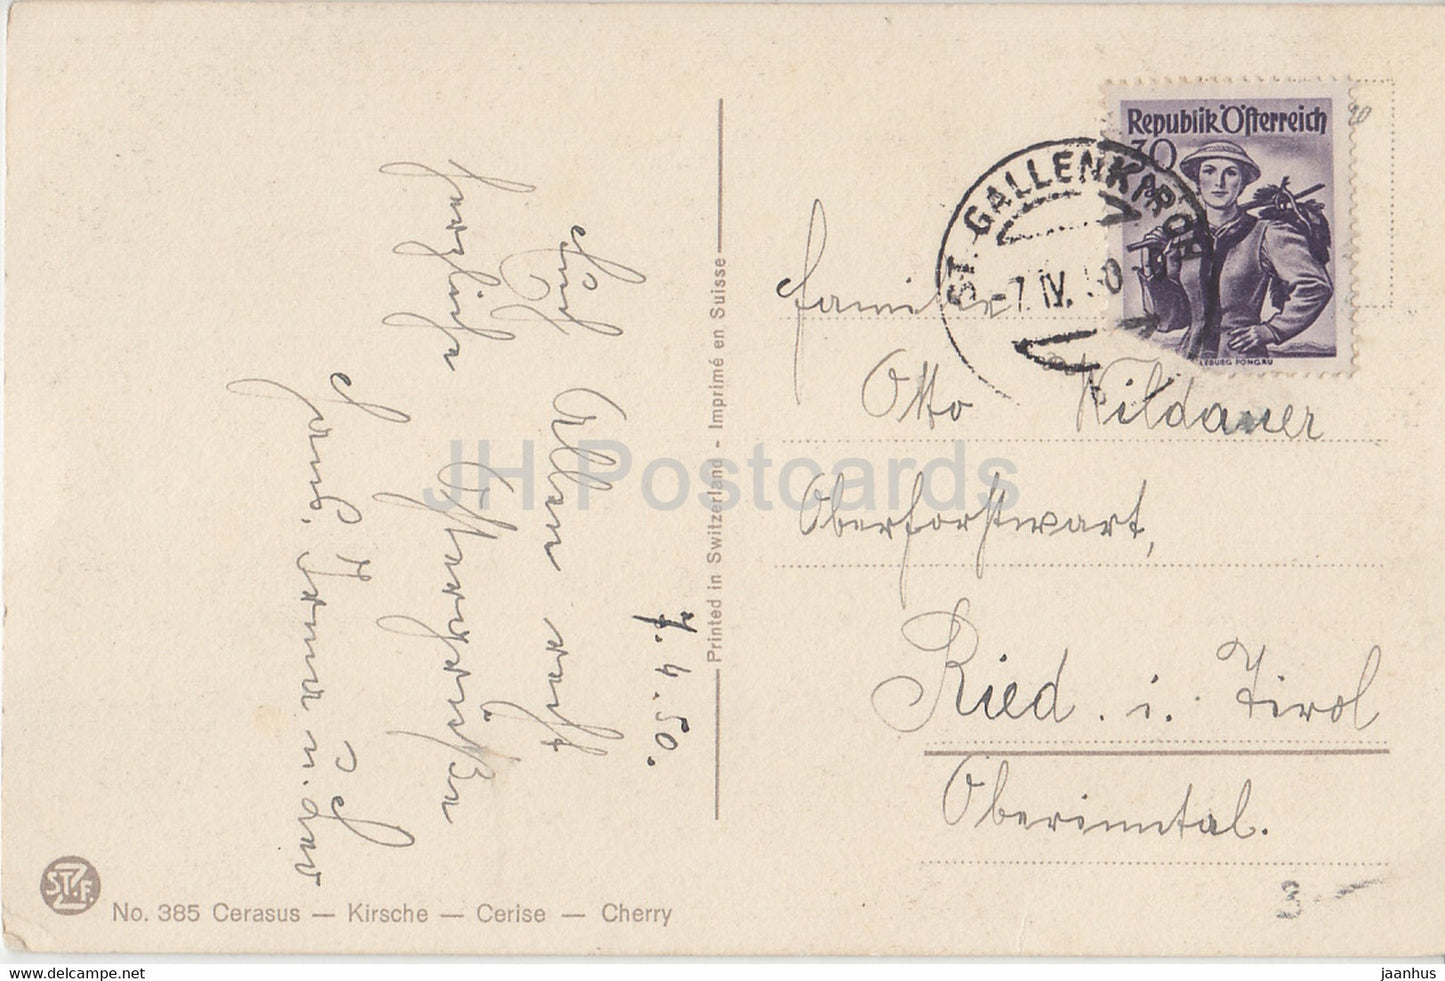 Cerasus - Kirsche - Cherry - 385 - old postcard - 1950 - Switzerland - used